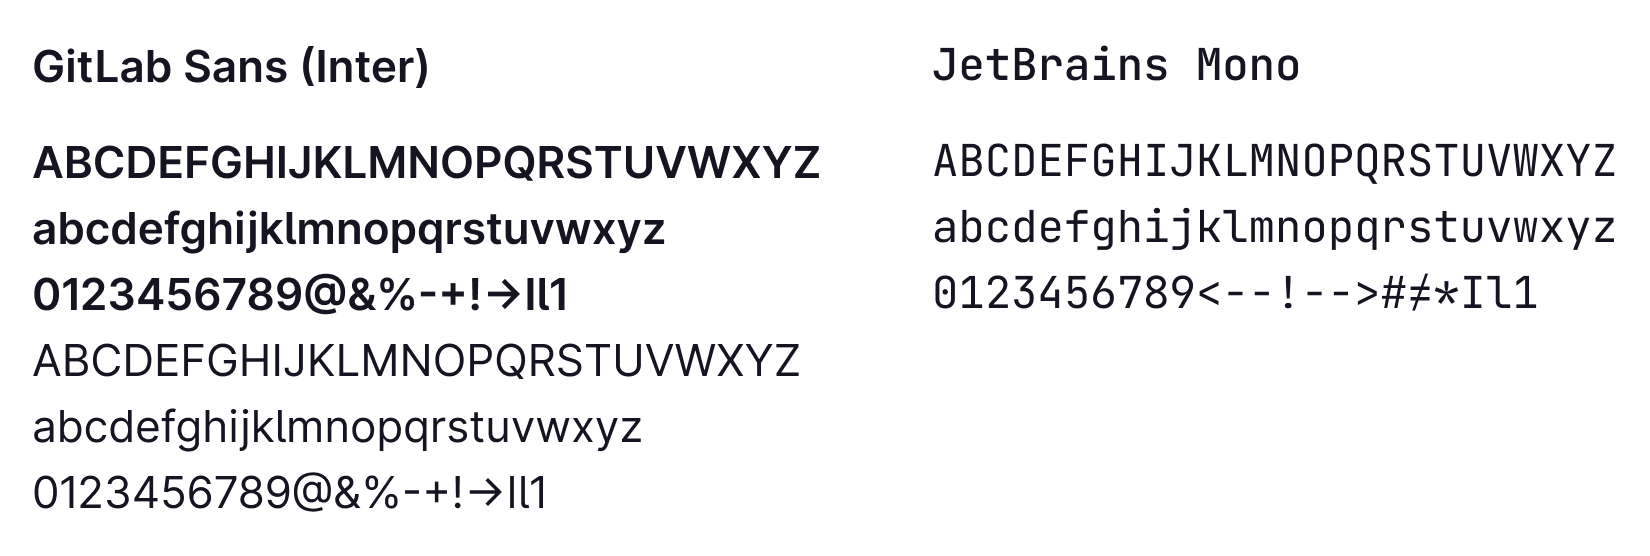 GitLab Sans (Inter) and JetBrains Mono typefaces